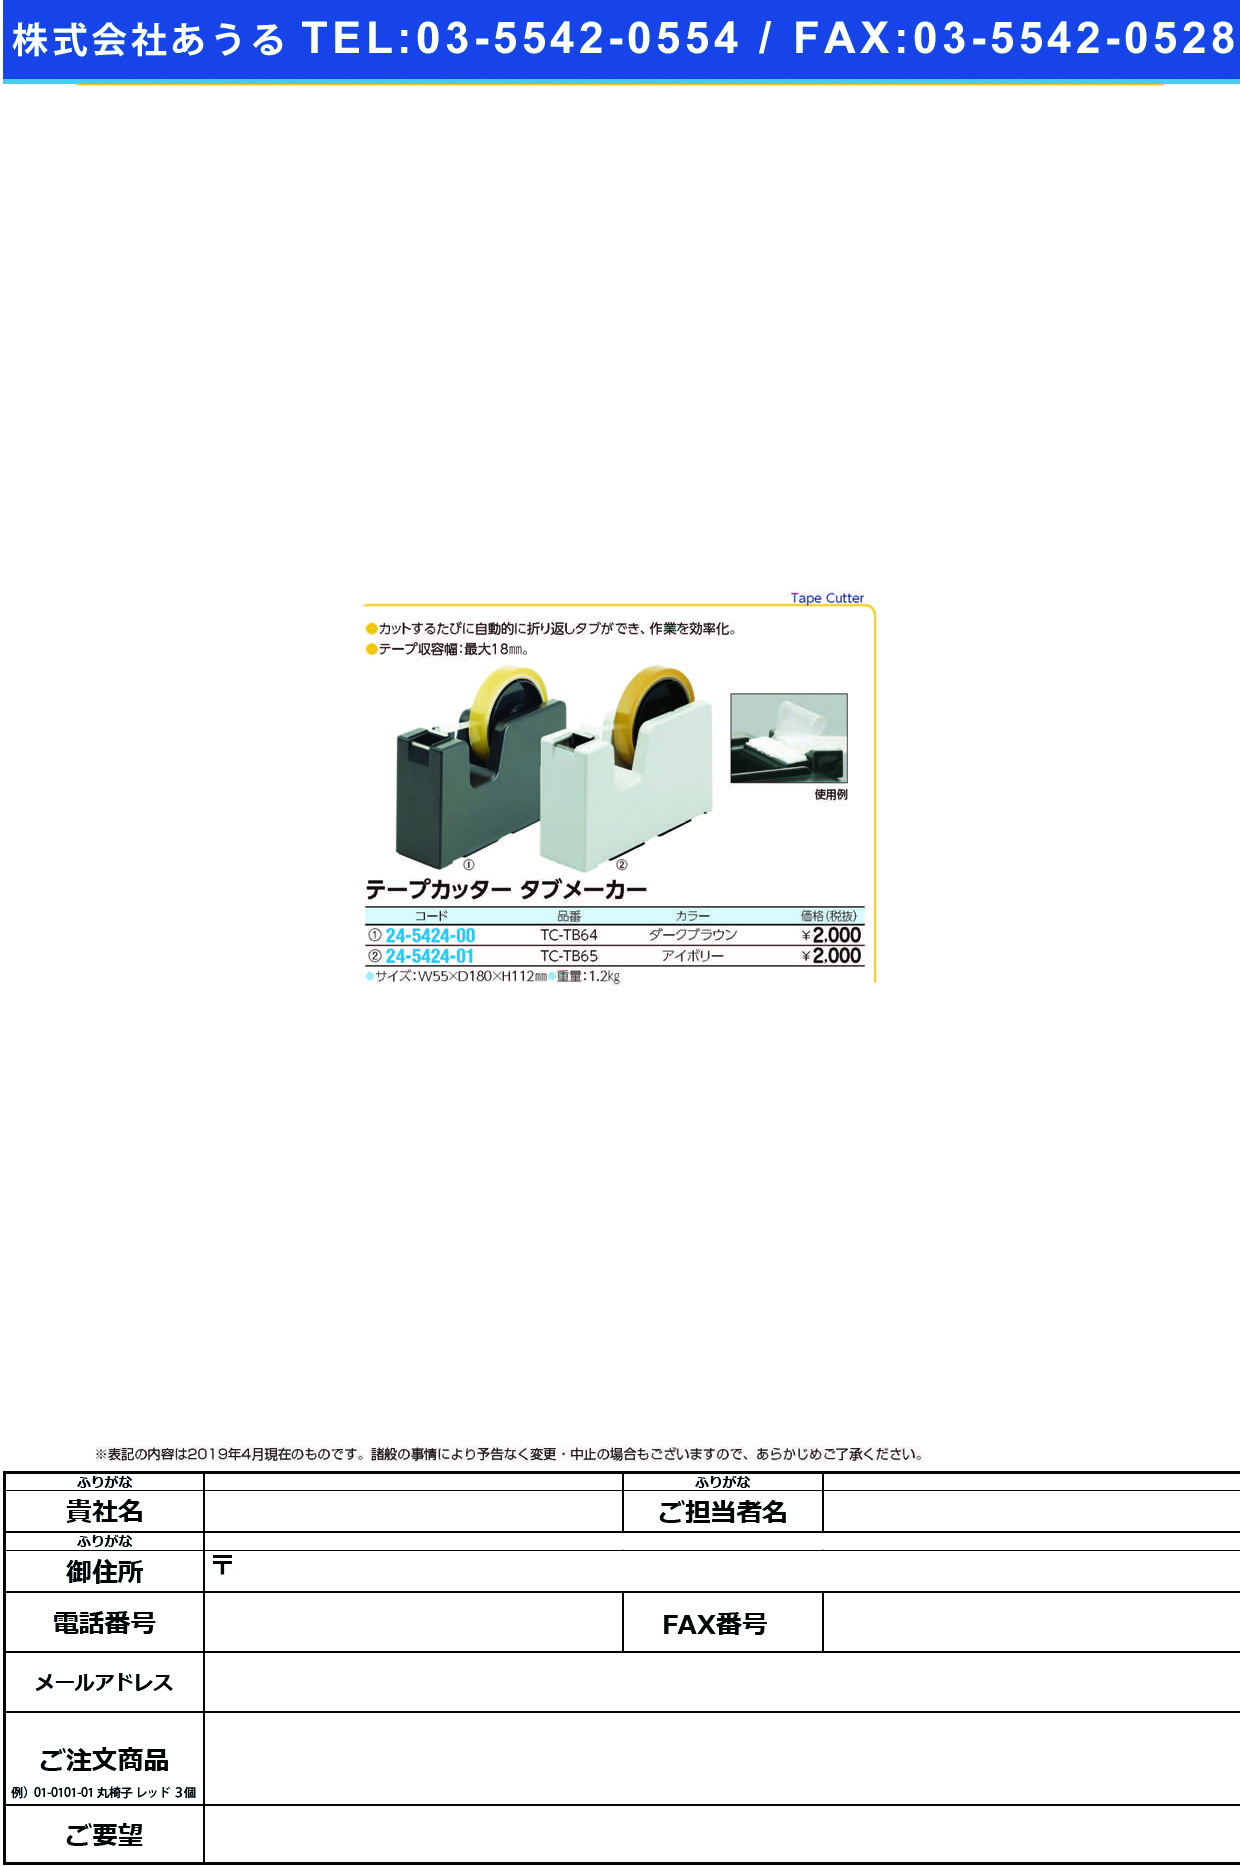 (24-5424-00)テープカッタータブメーカー TC-TB64(ﾀﾞｰｸﾌﾞﾗｳﾝ) ﾃｰﾌﾟｶｯﾀｰﾀﾌﾞﾒｰｶｰ【1台単位】【2019年カタログ商品】